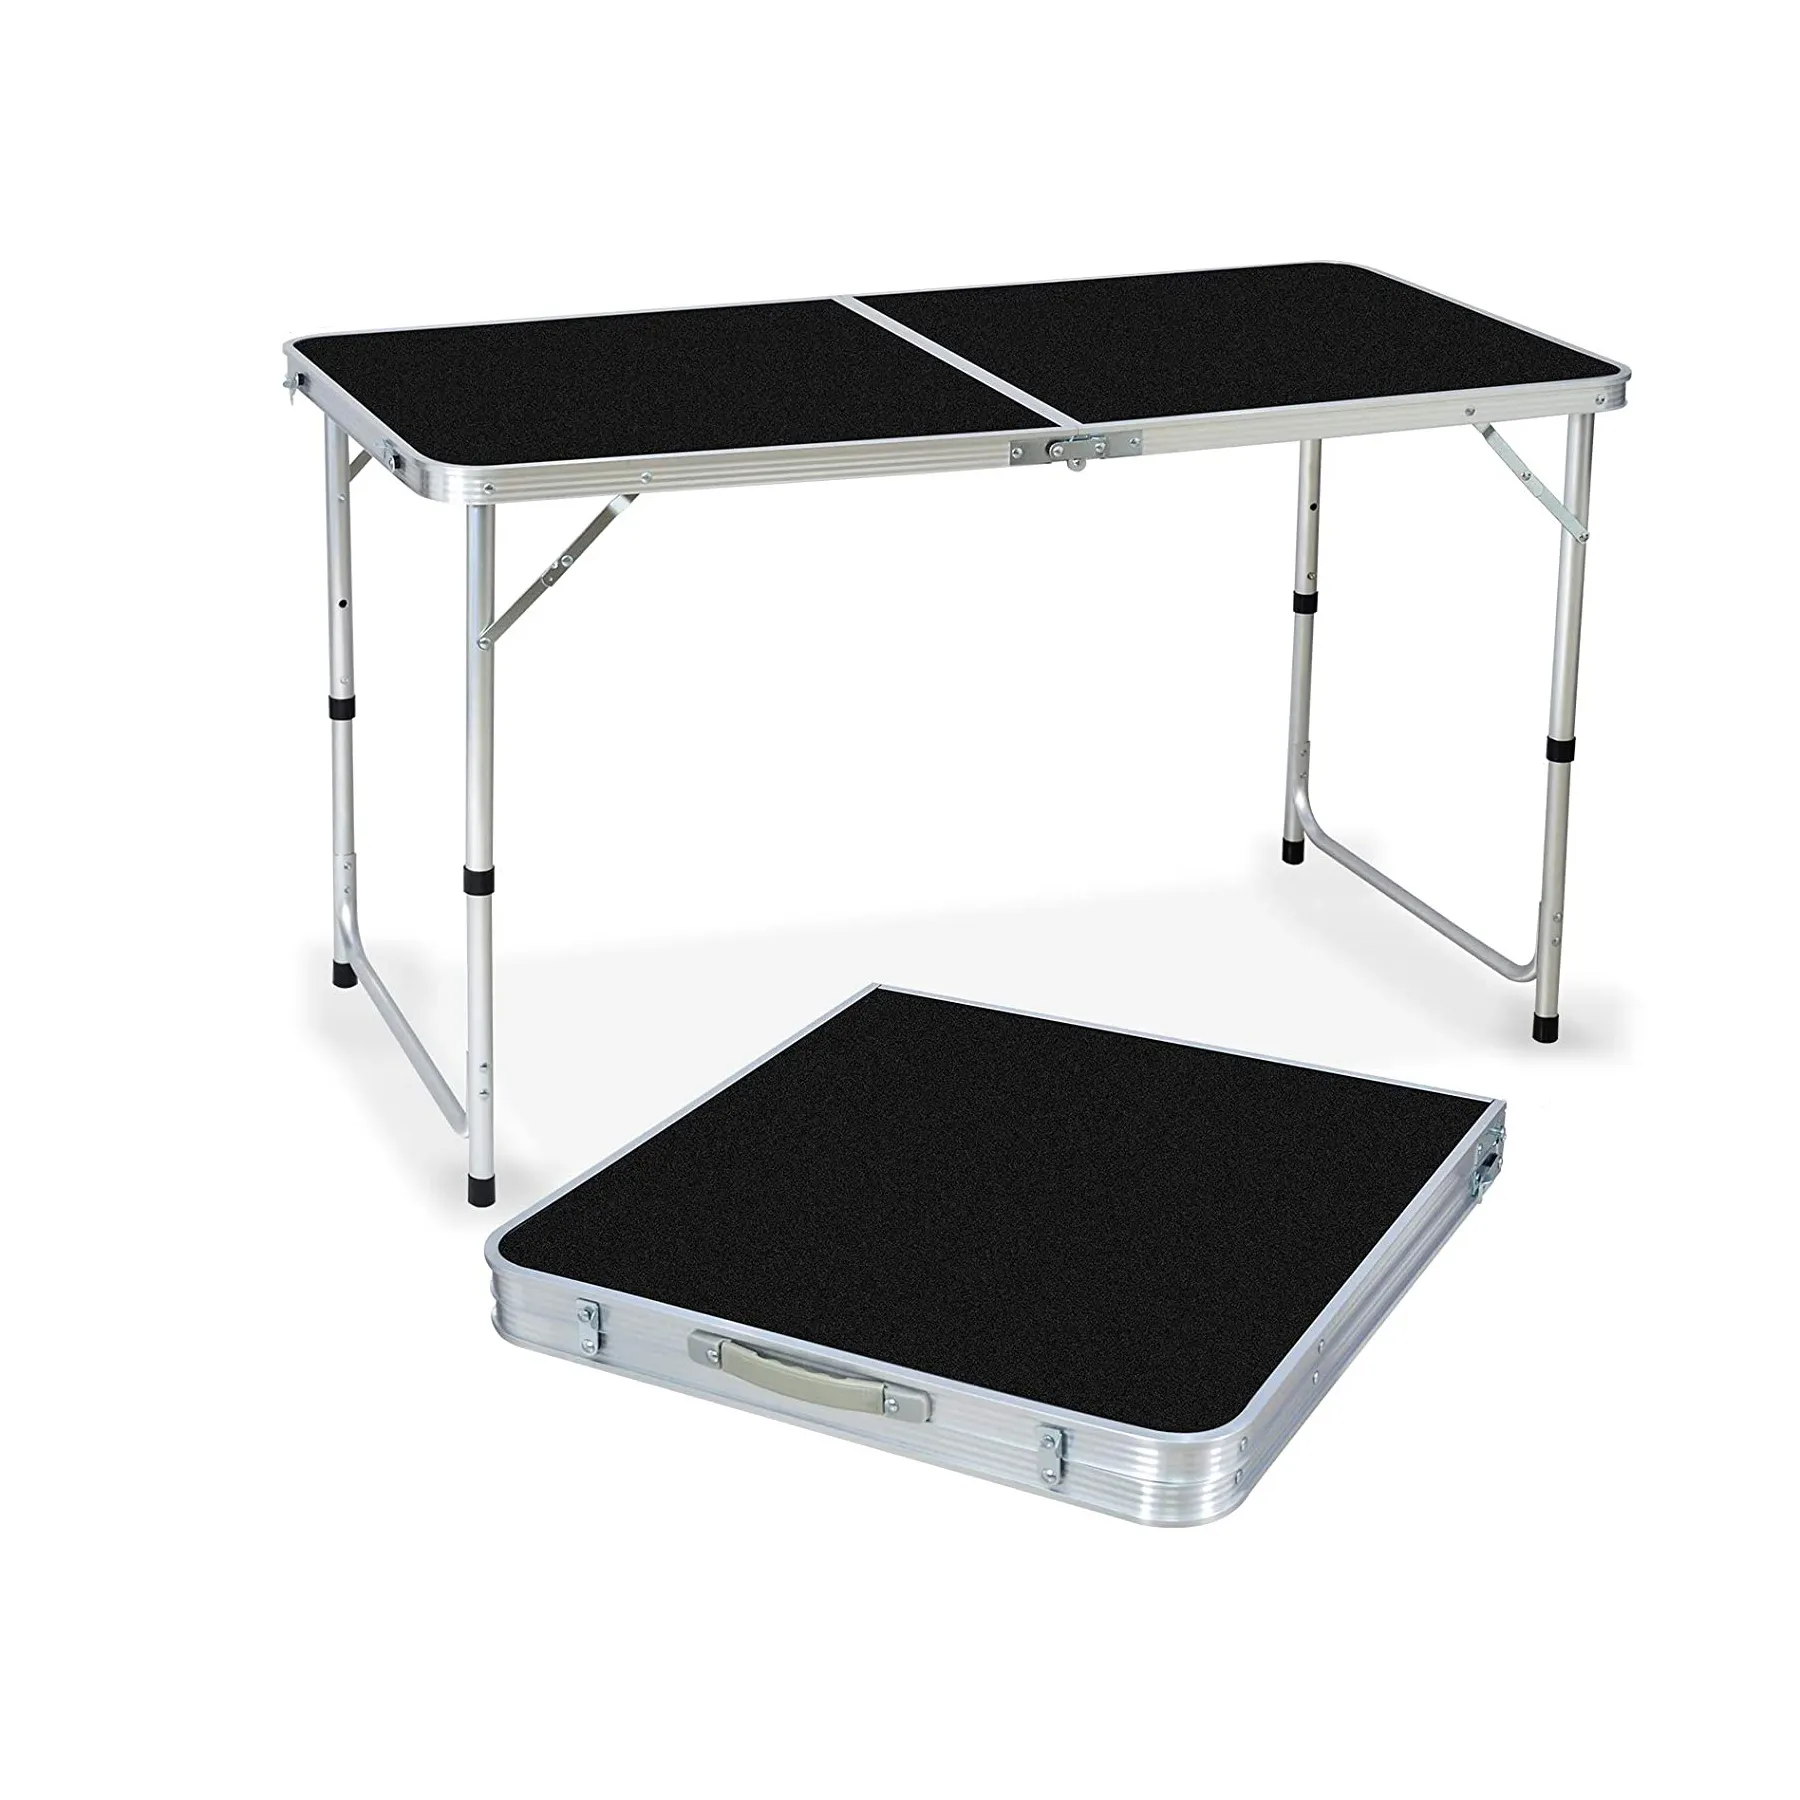 Table de camping pliante de 4 pieds Portable, table de pique-nique en aluminium de 120cm facile à installer, table de plage pliable légère de 1.2m Save-Spac